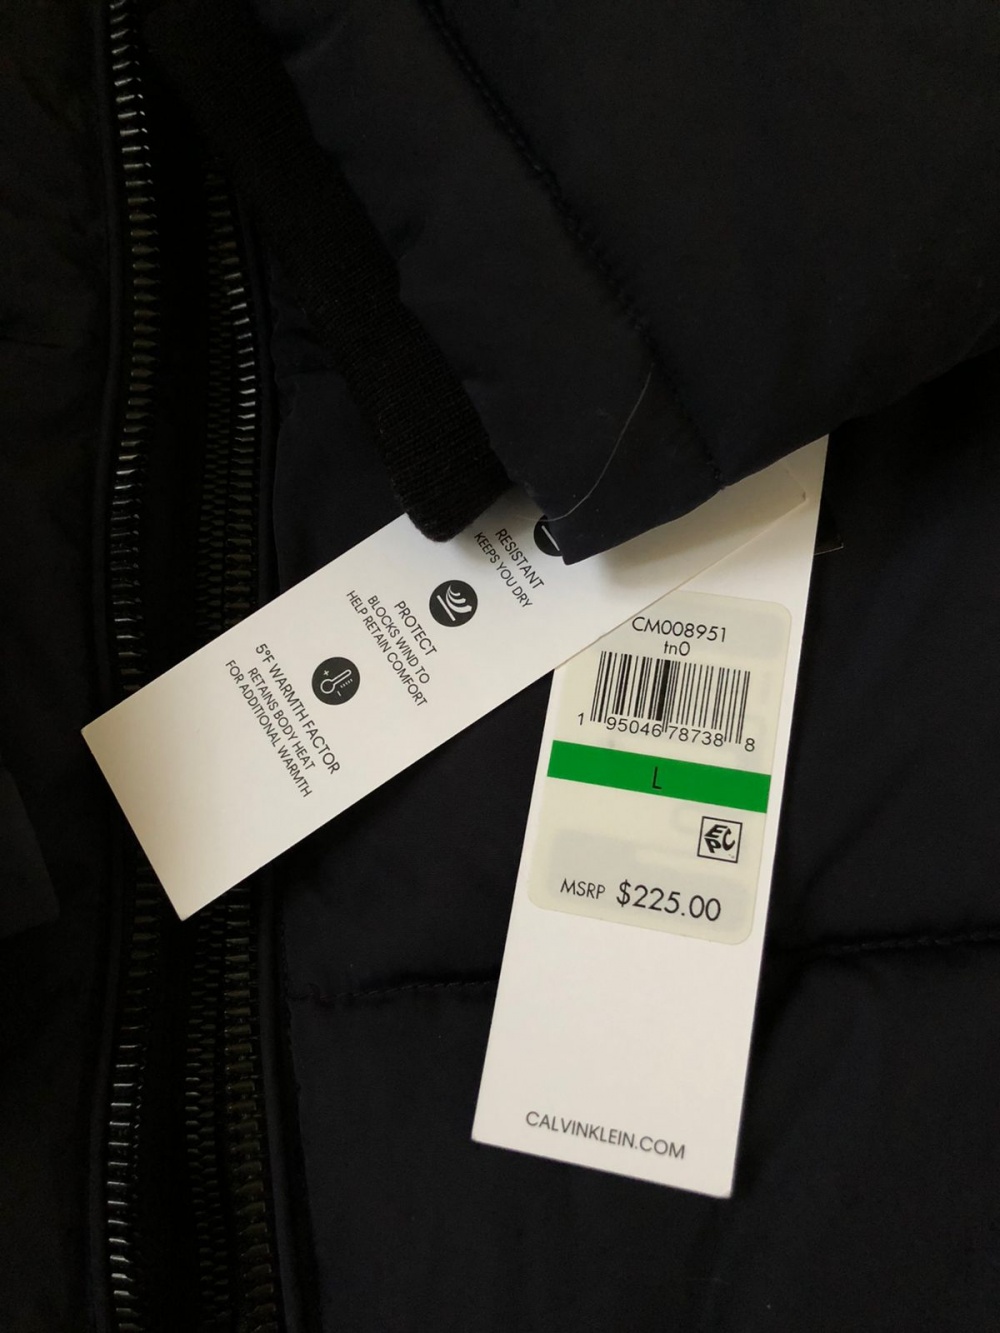 Мужская куртка Calvin Klein, p. L